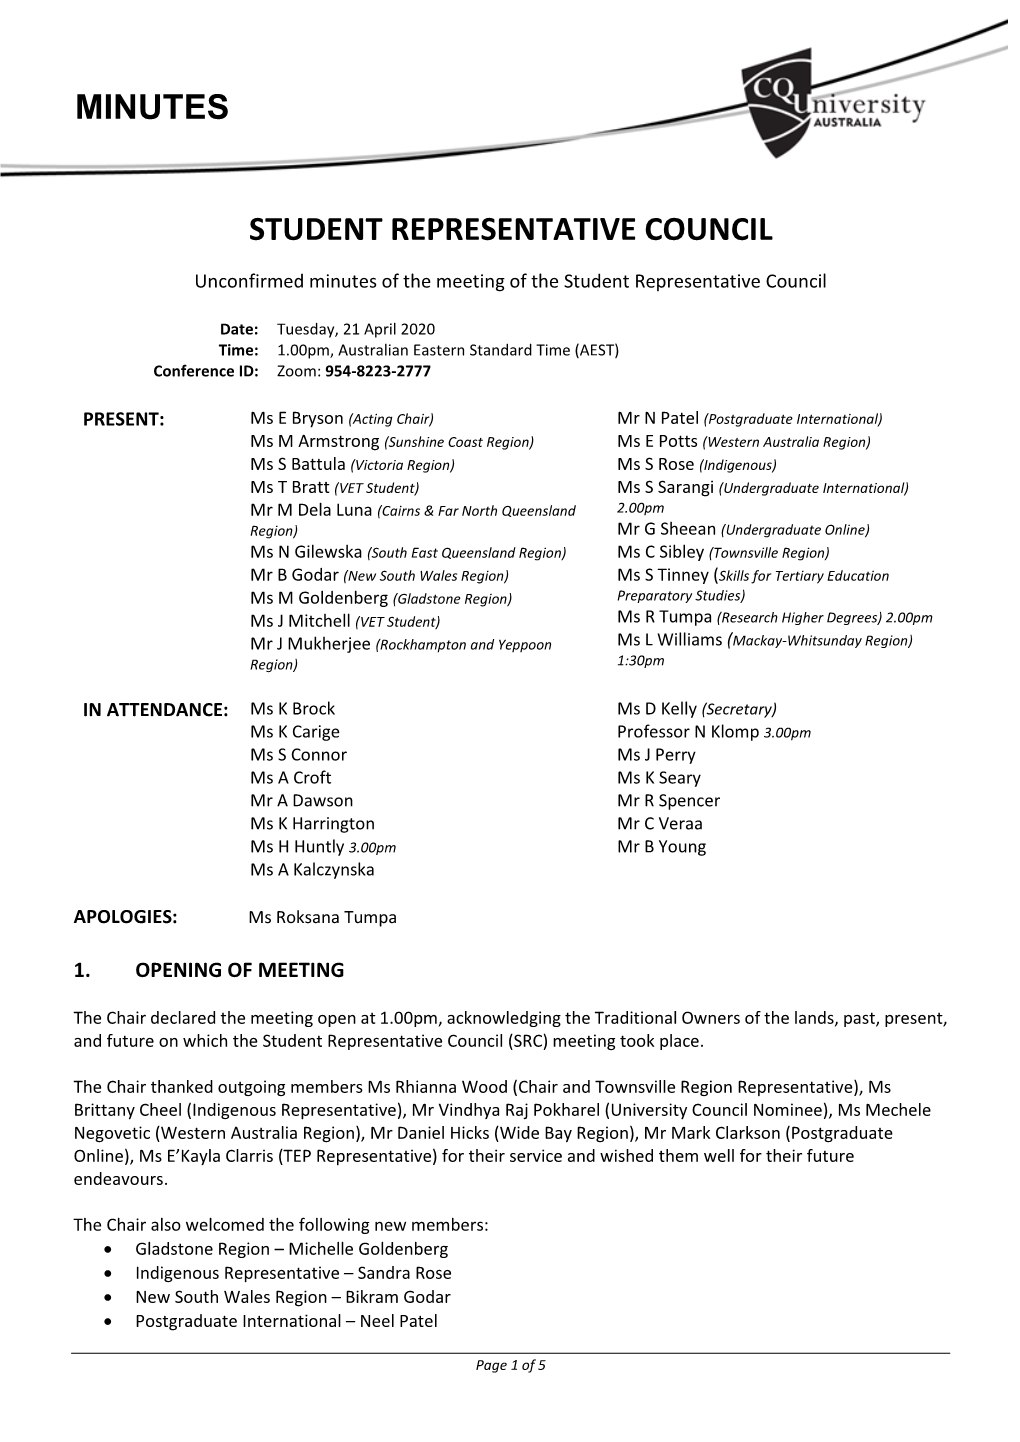 Student Representative Council Minutes